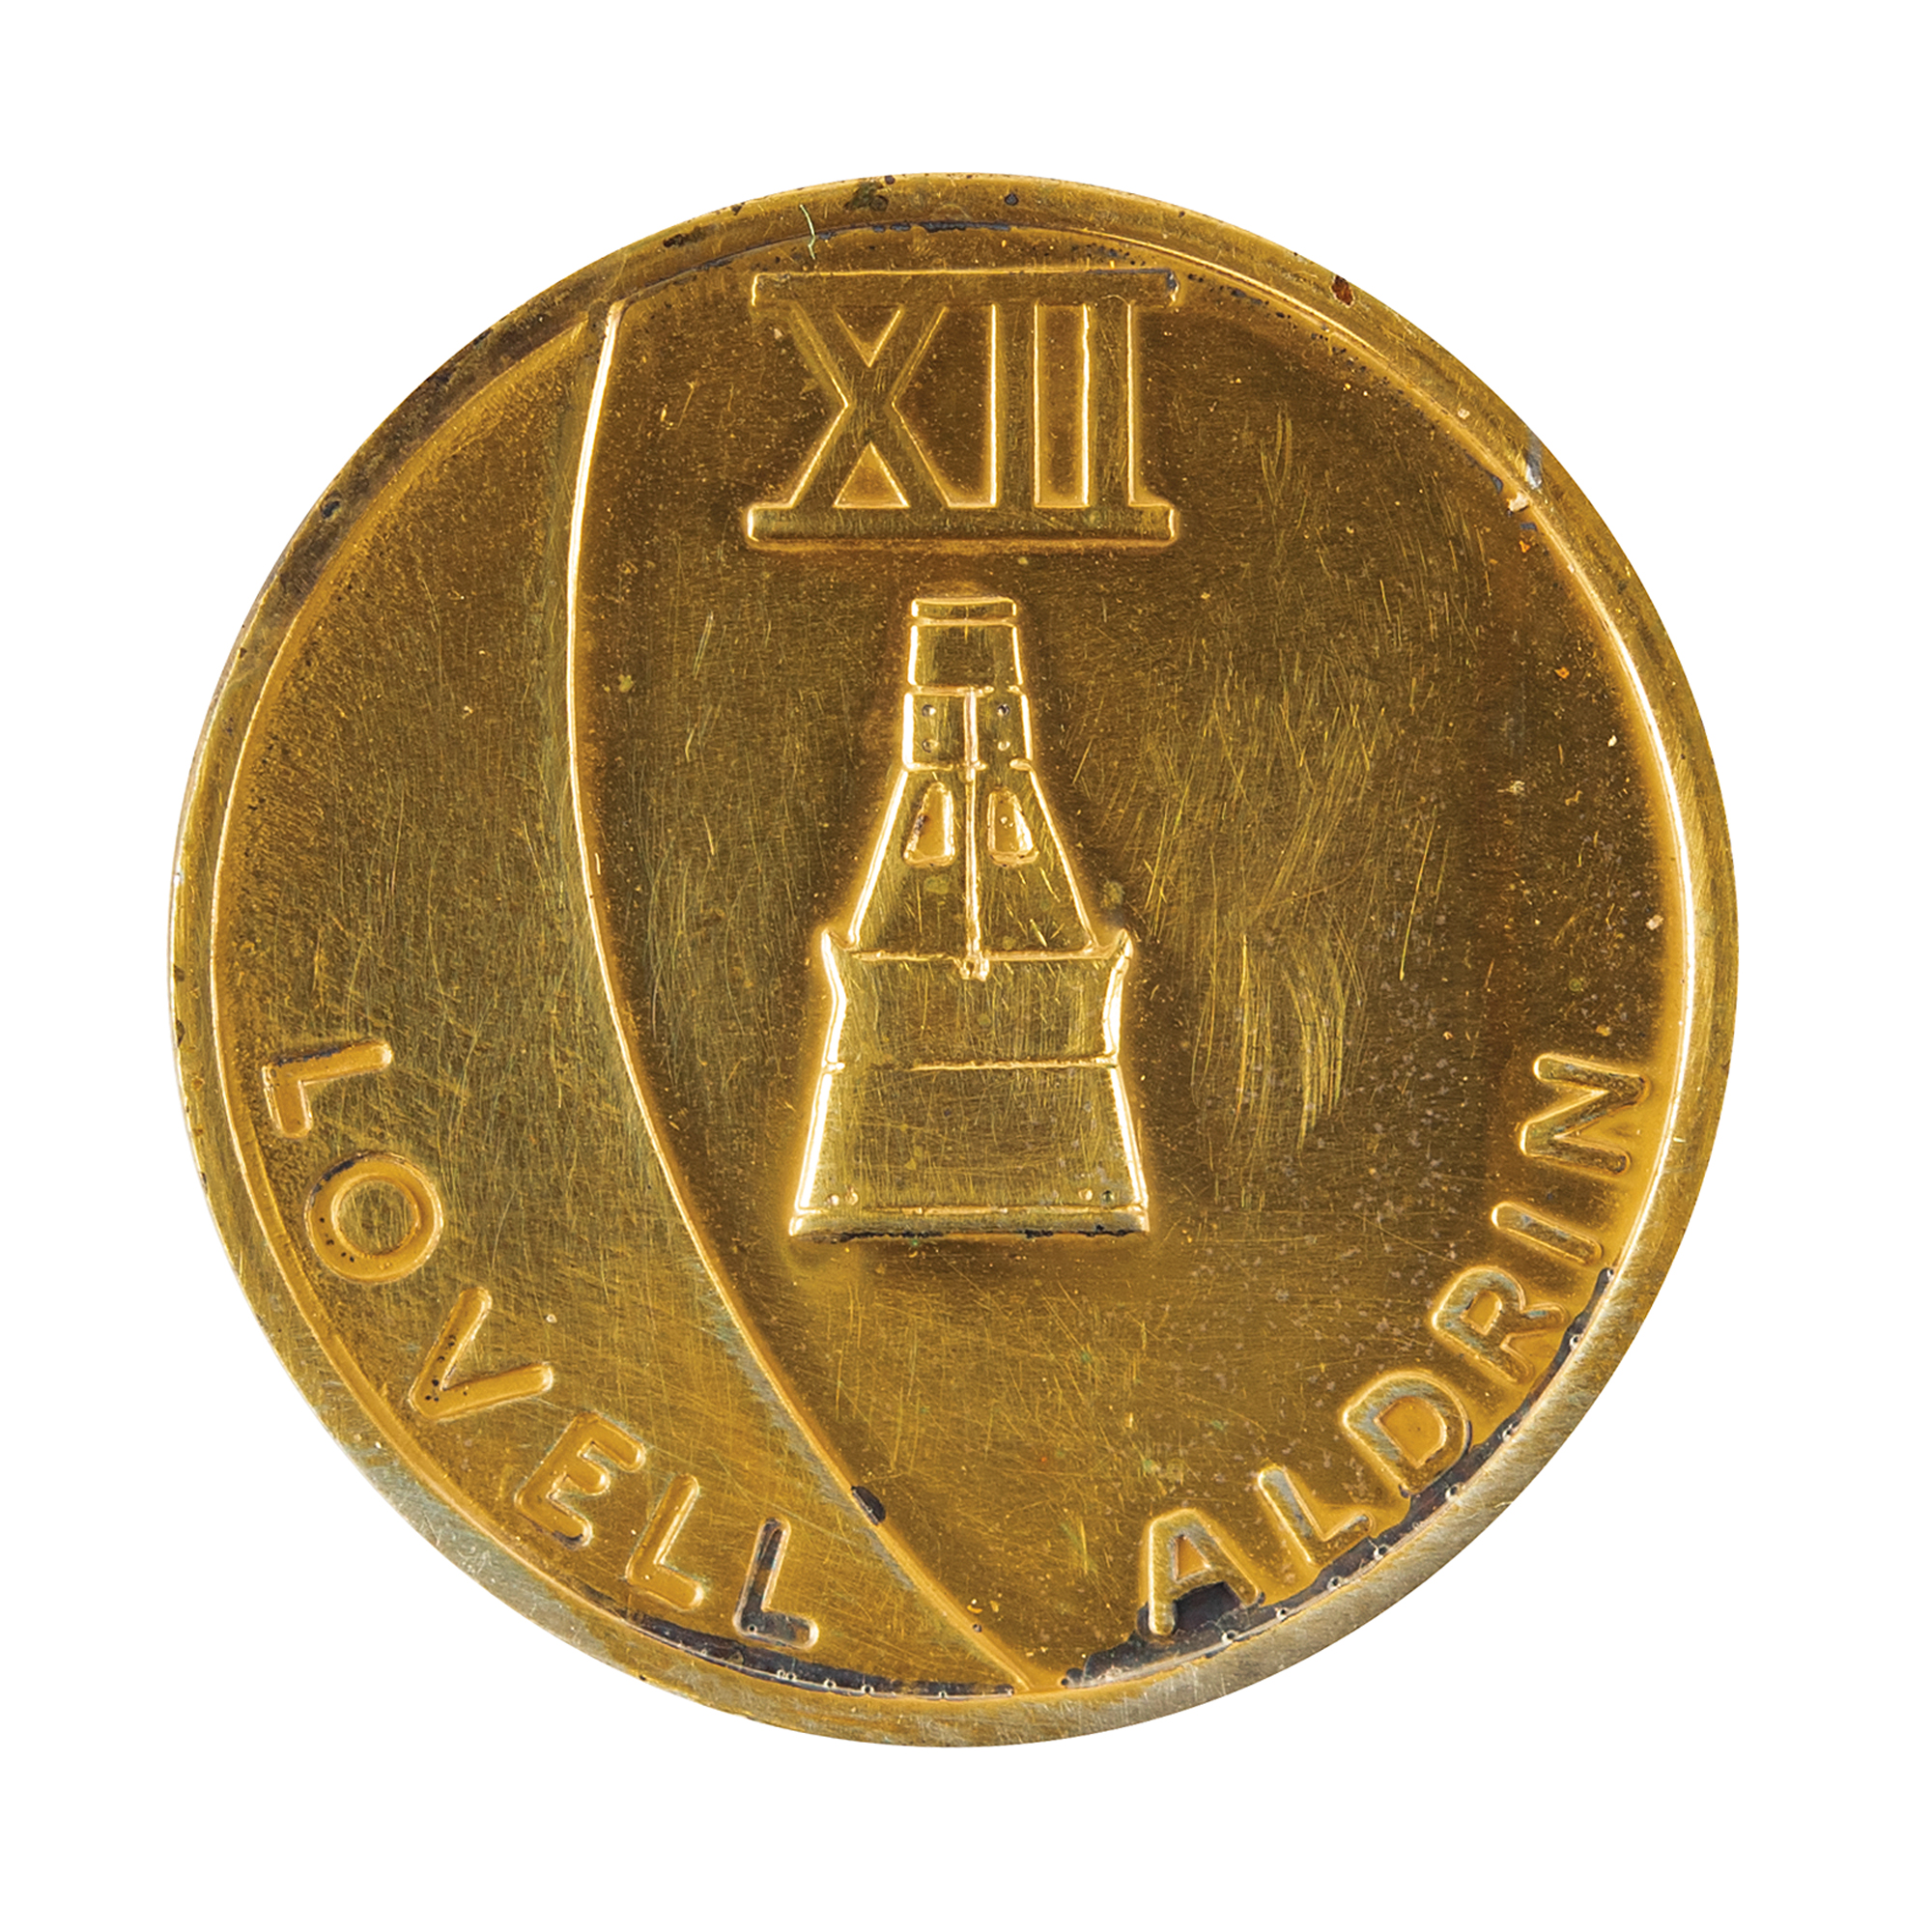 Lot #7076 Gemini 12 Flown Gold-Plated Fliteline Medallion